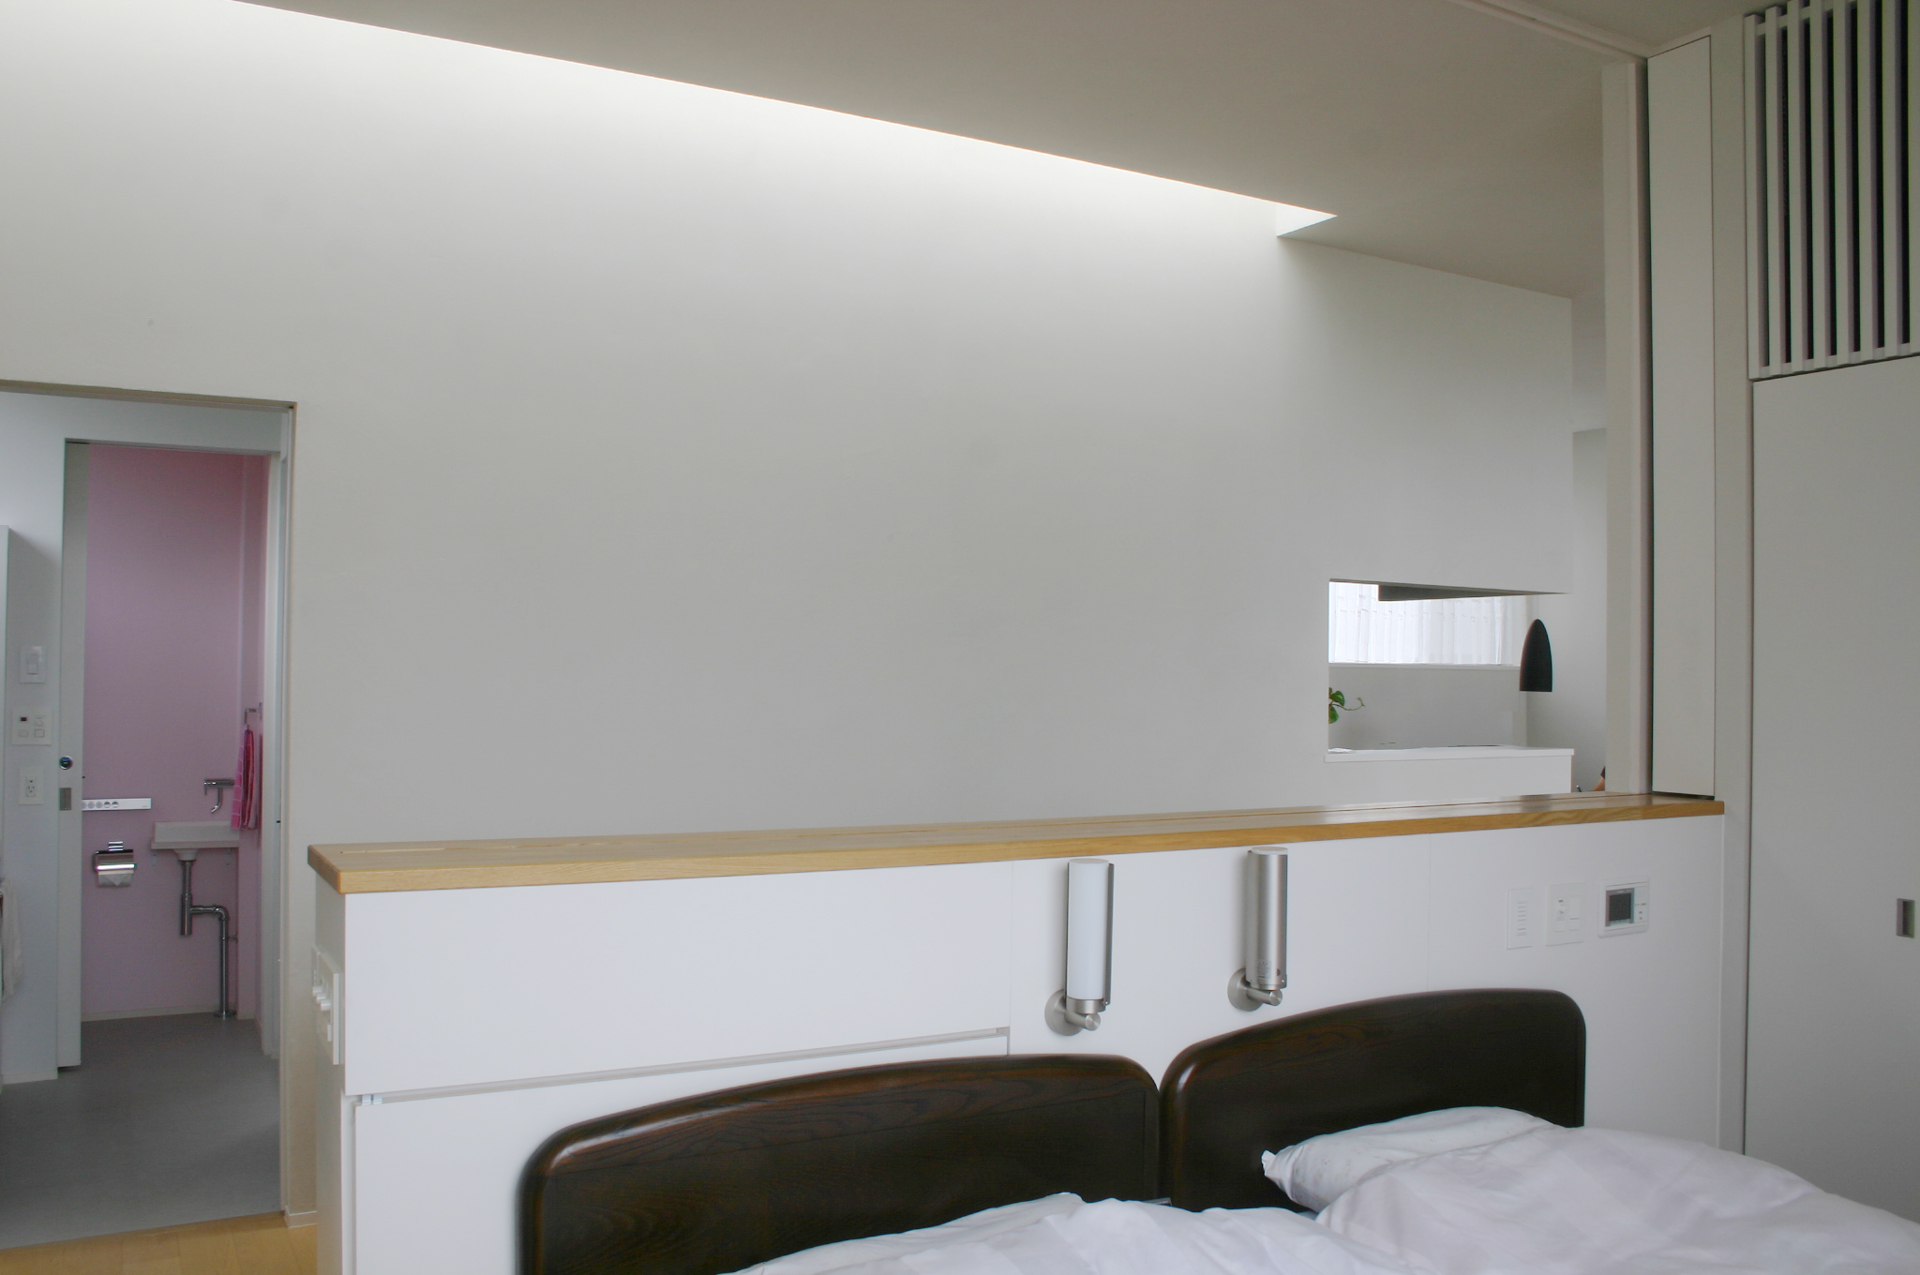 寝室は、壁に収納されている障子で明るさを調整できる